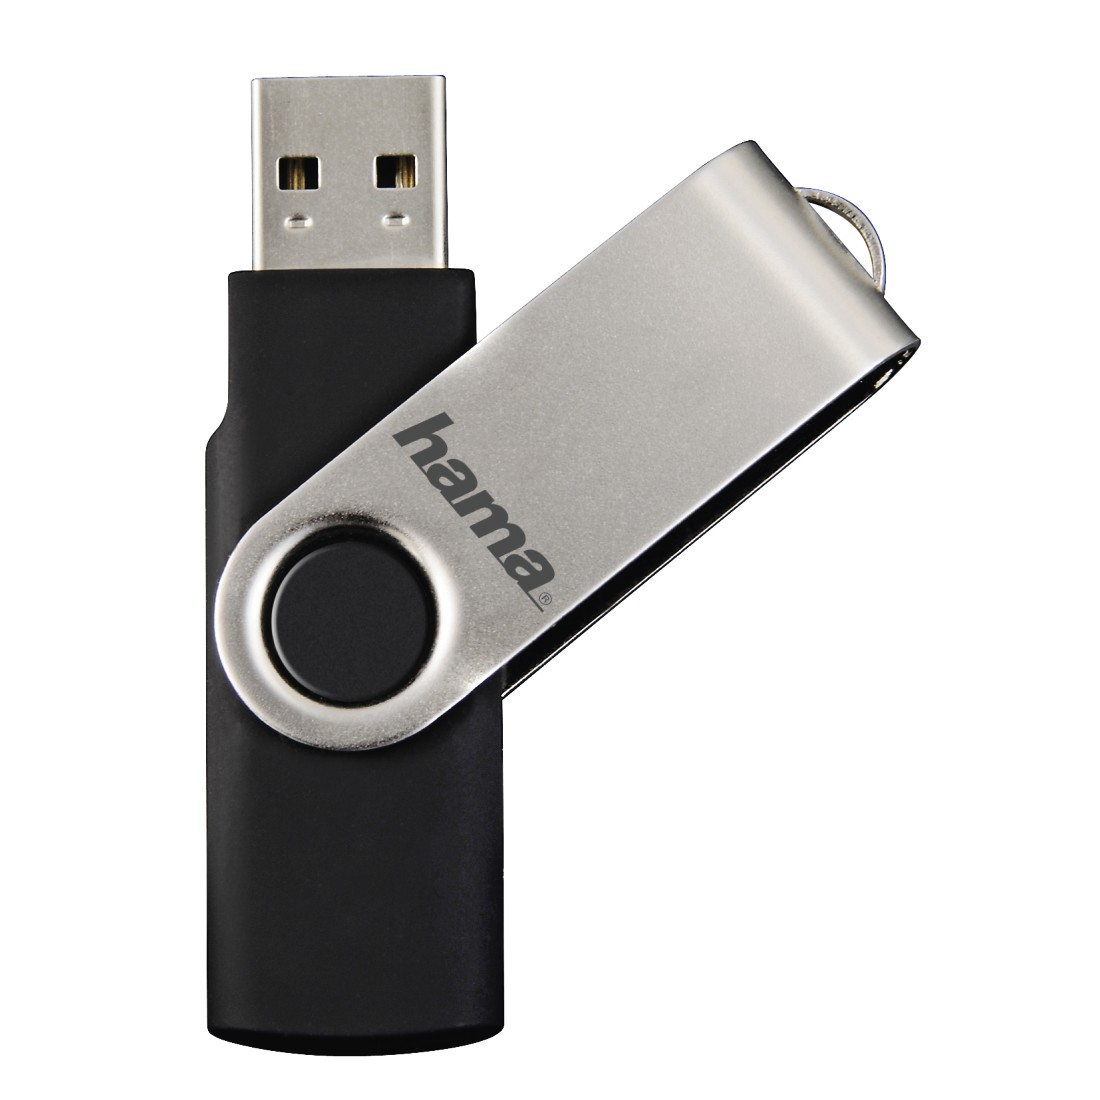 GB, Rotate 10 Schwarz/Silber 32 USB-Stick, MB/s, HAMA